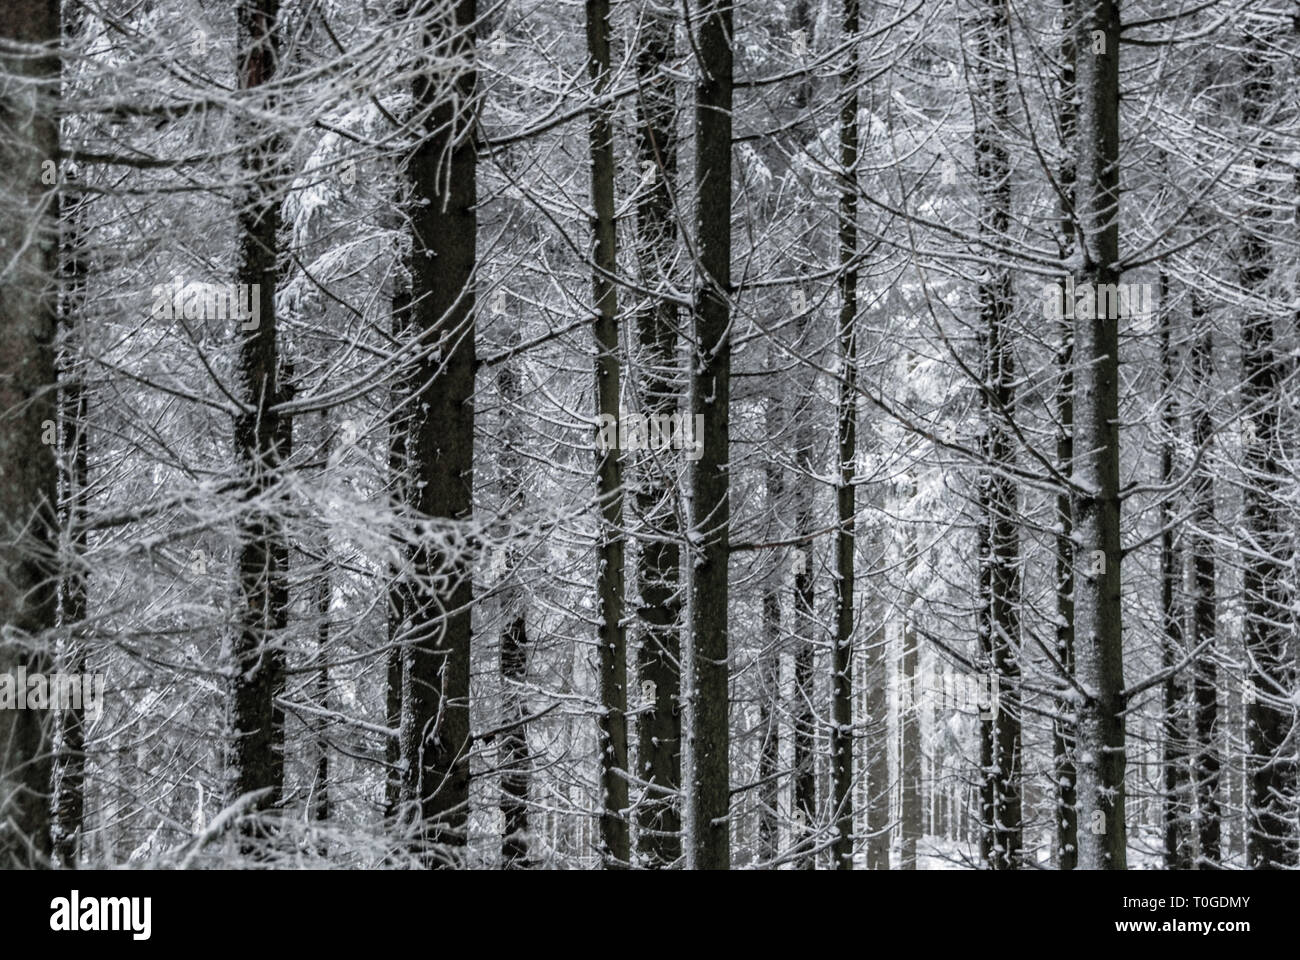 Hohe Acht, Eifel, Germania, 2 dicembre 2012. Snowy tronchi e rami in una fitta foresta. Foto Stock